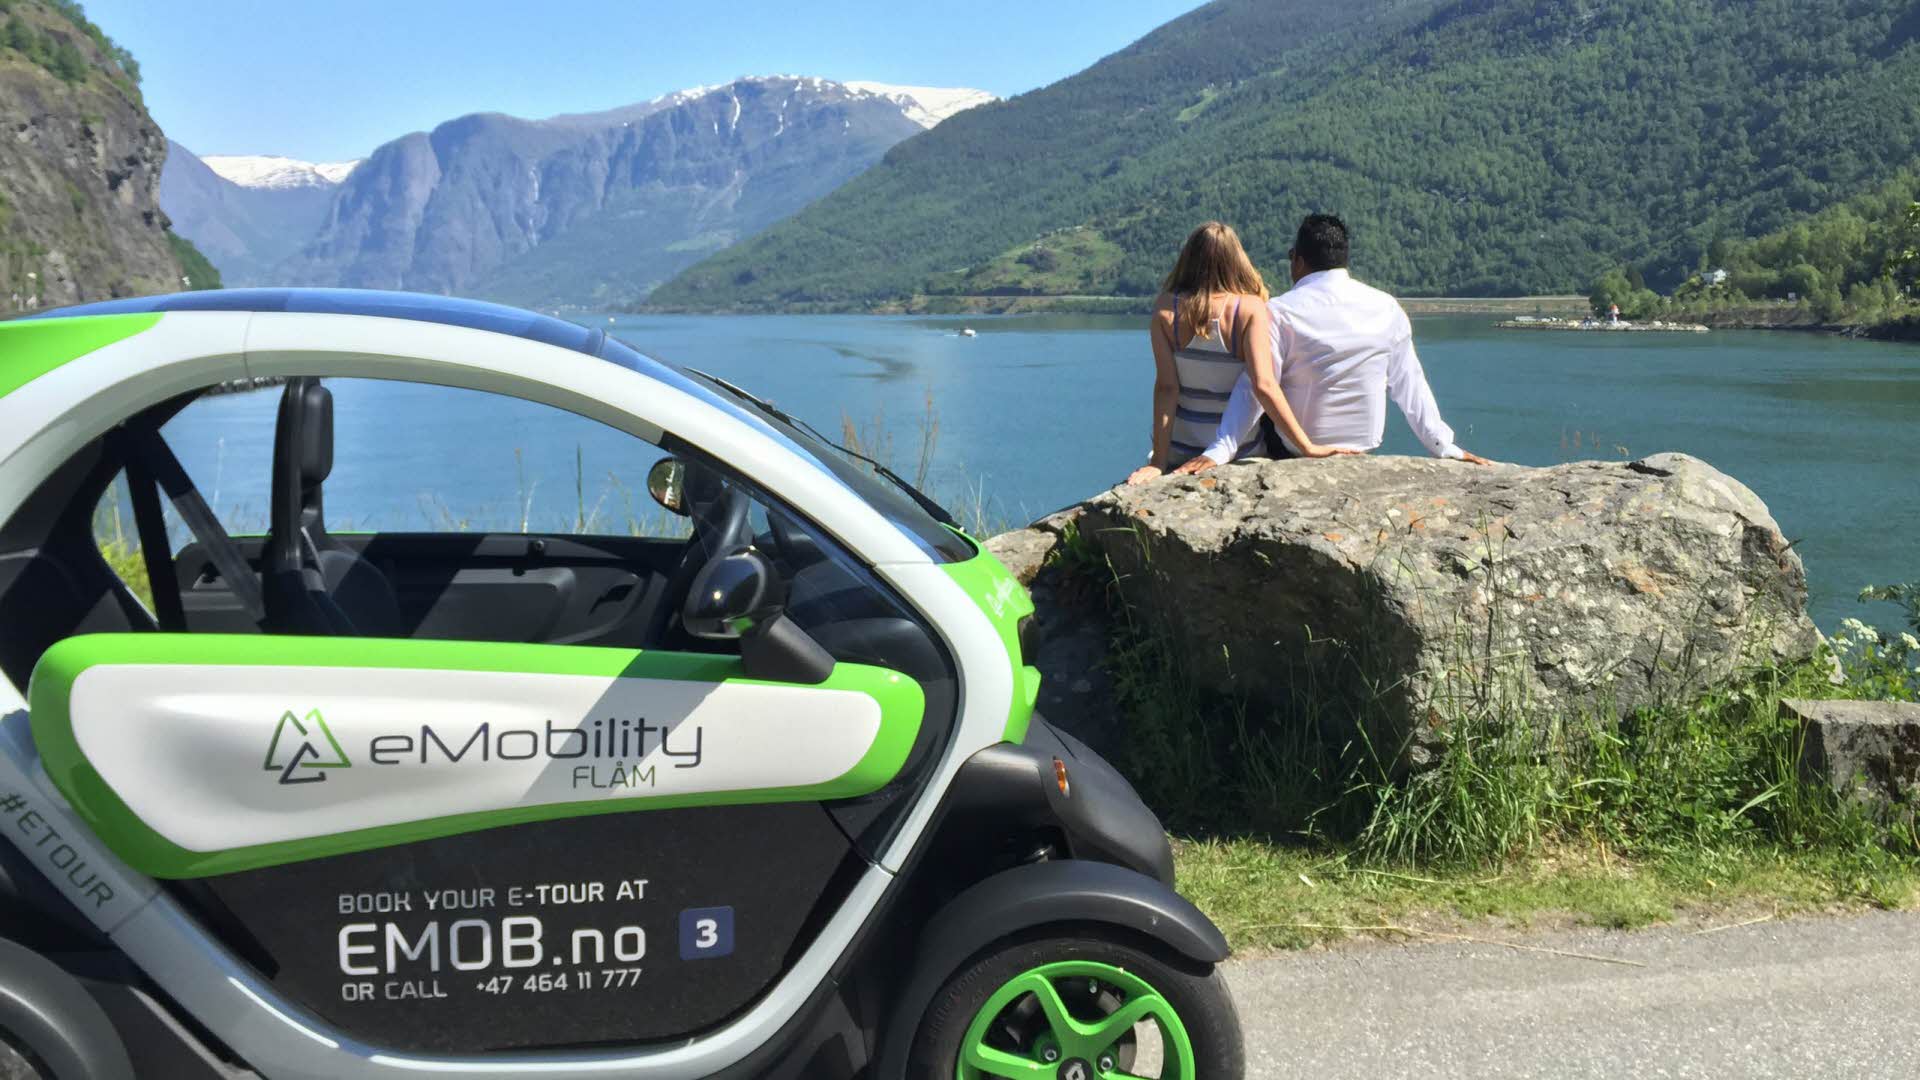 Ein Paar sitzt auf einem Felsen am Ufer und genießt die Aussicht auf Fjord und Berge, im Vordergrund ein Elektroauto